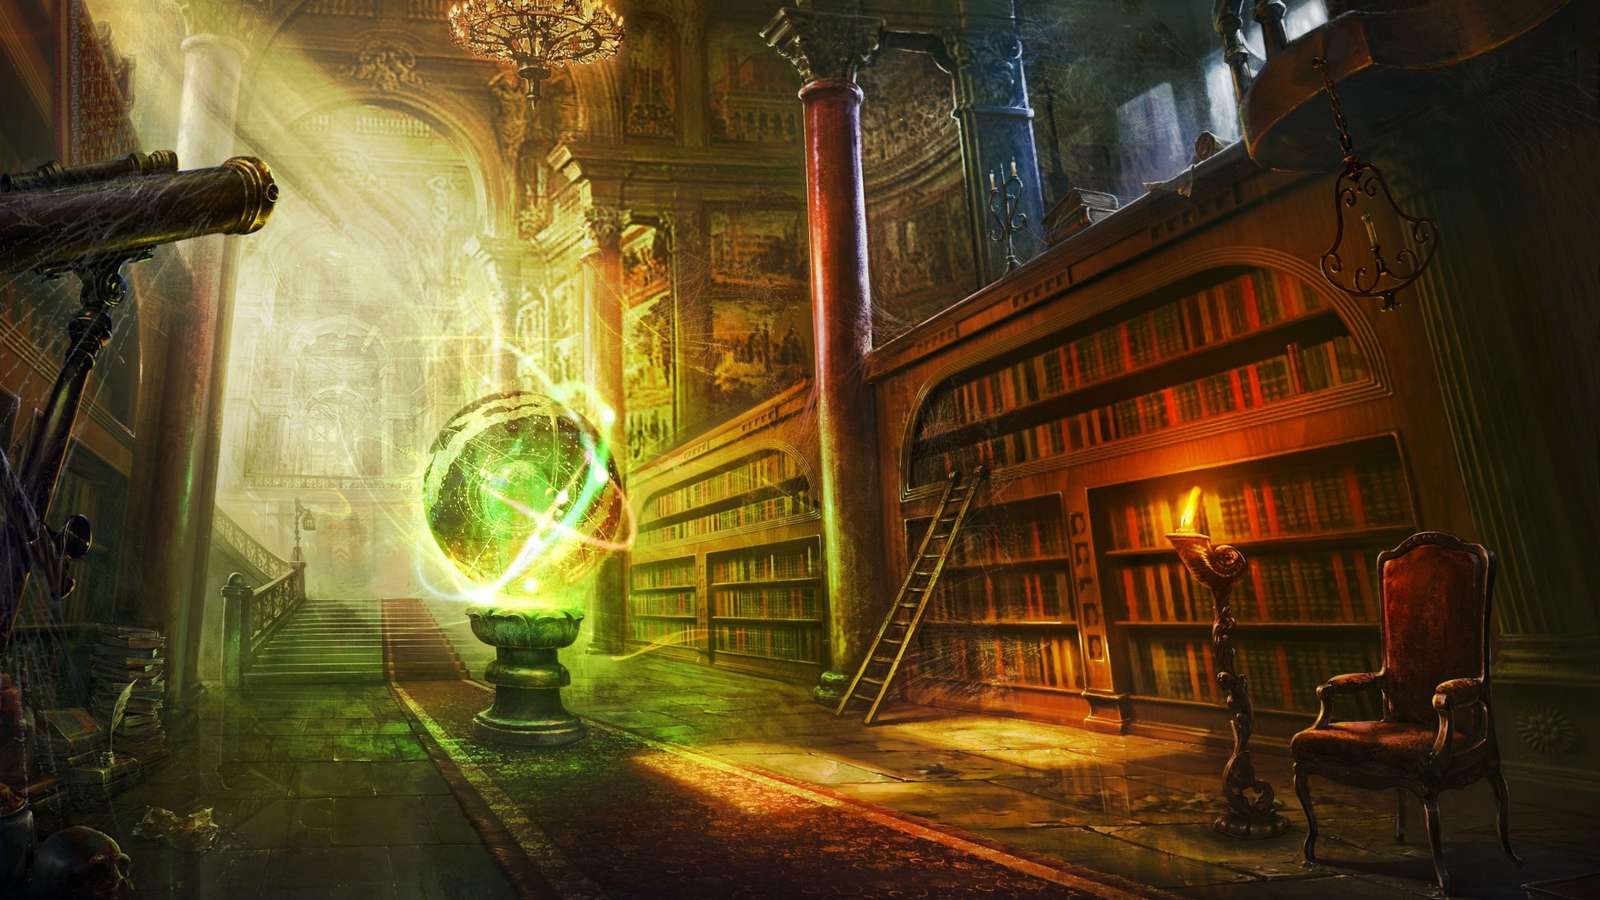 μαγική μπάλα βιβλιοθήκη κάστρο στήλες παζλ online από φωτογραφία